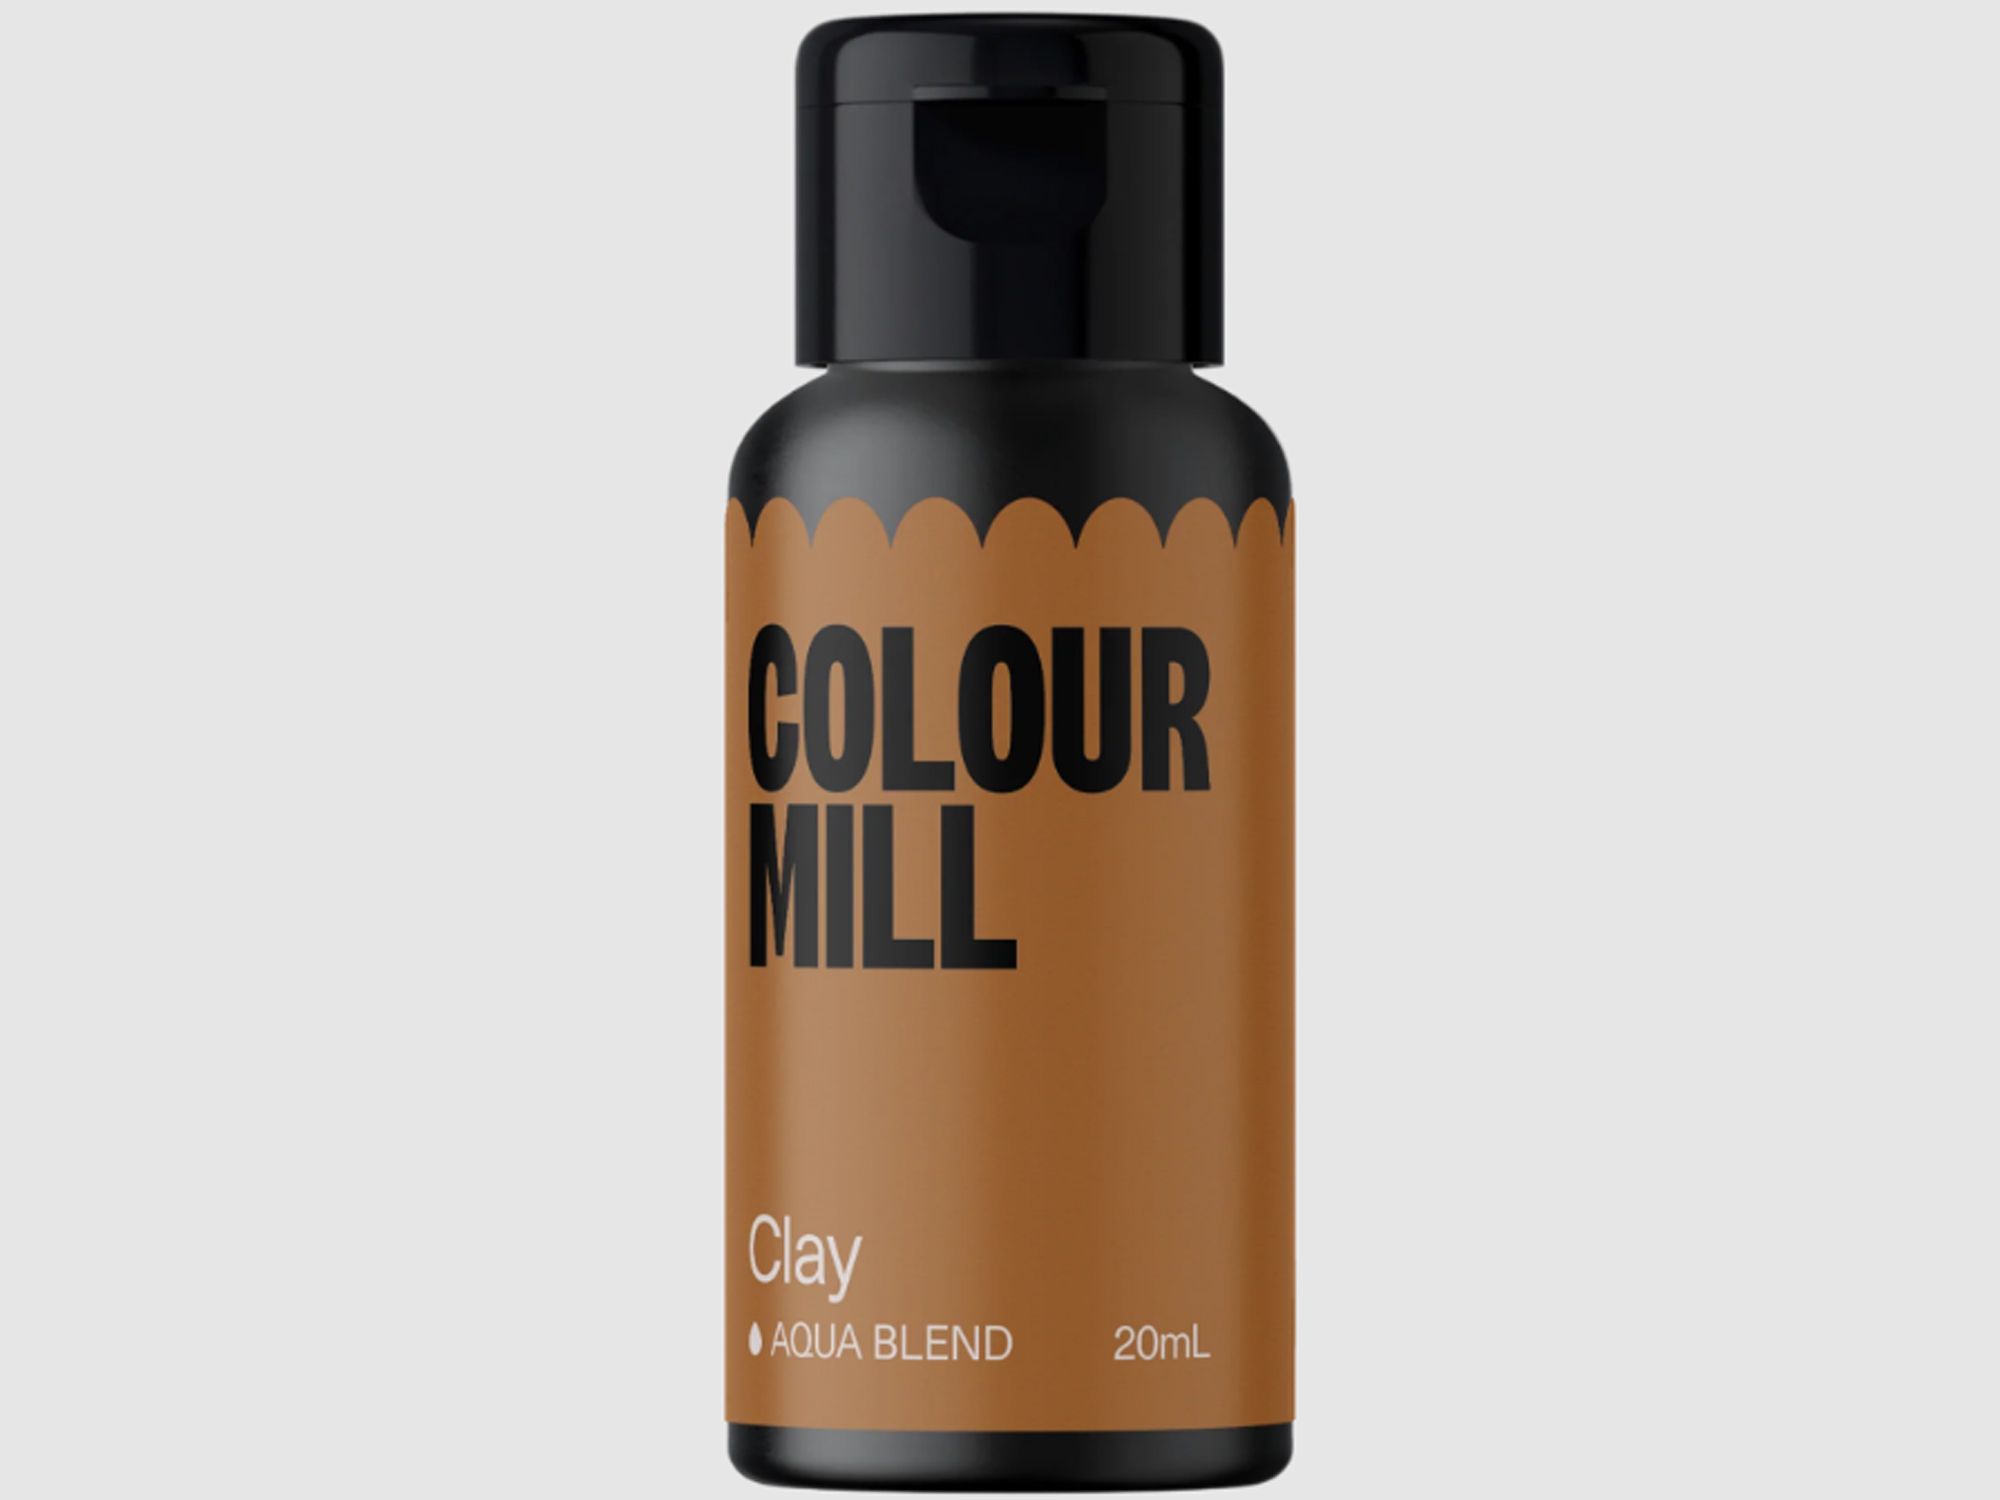 Colour Mill Clay (Aqua Blend) 20ml